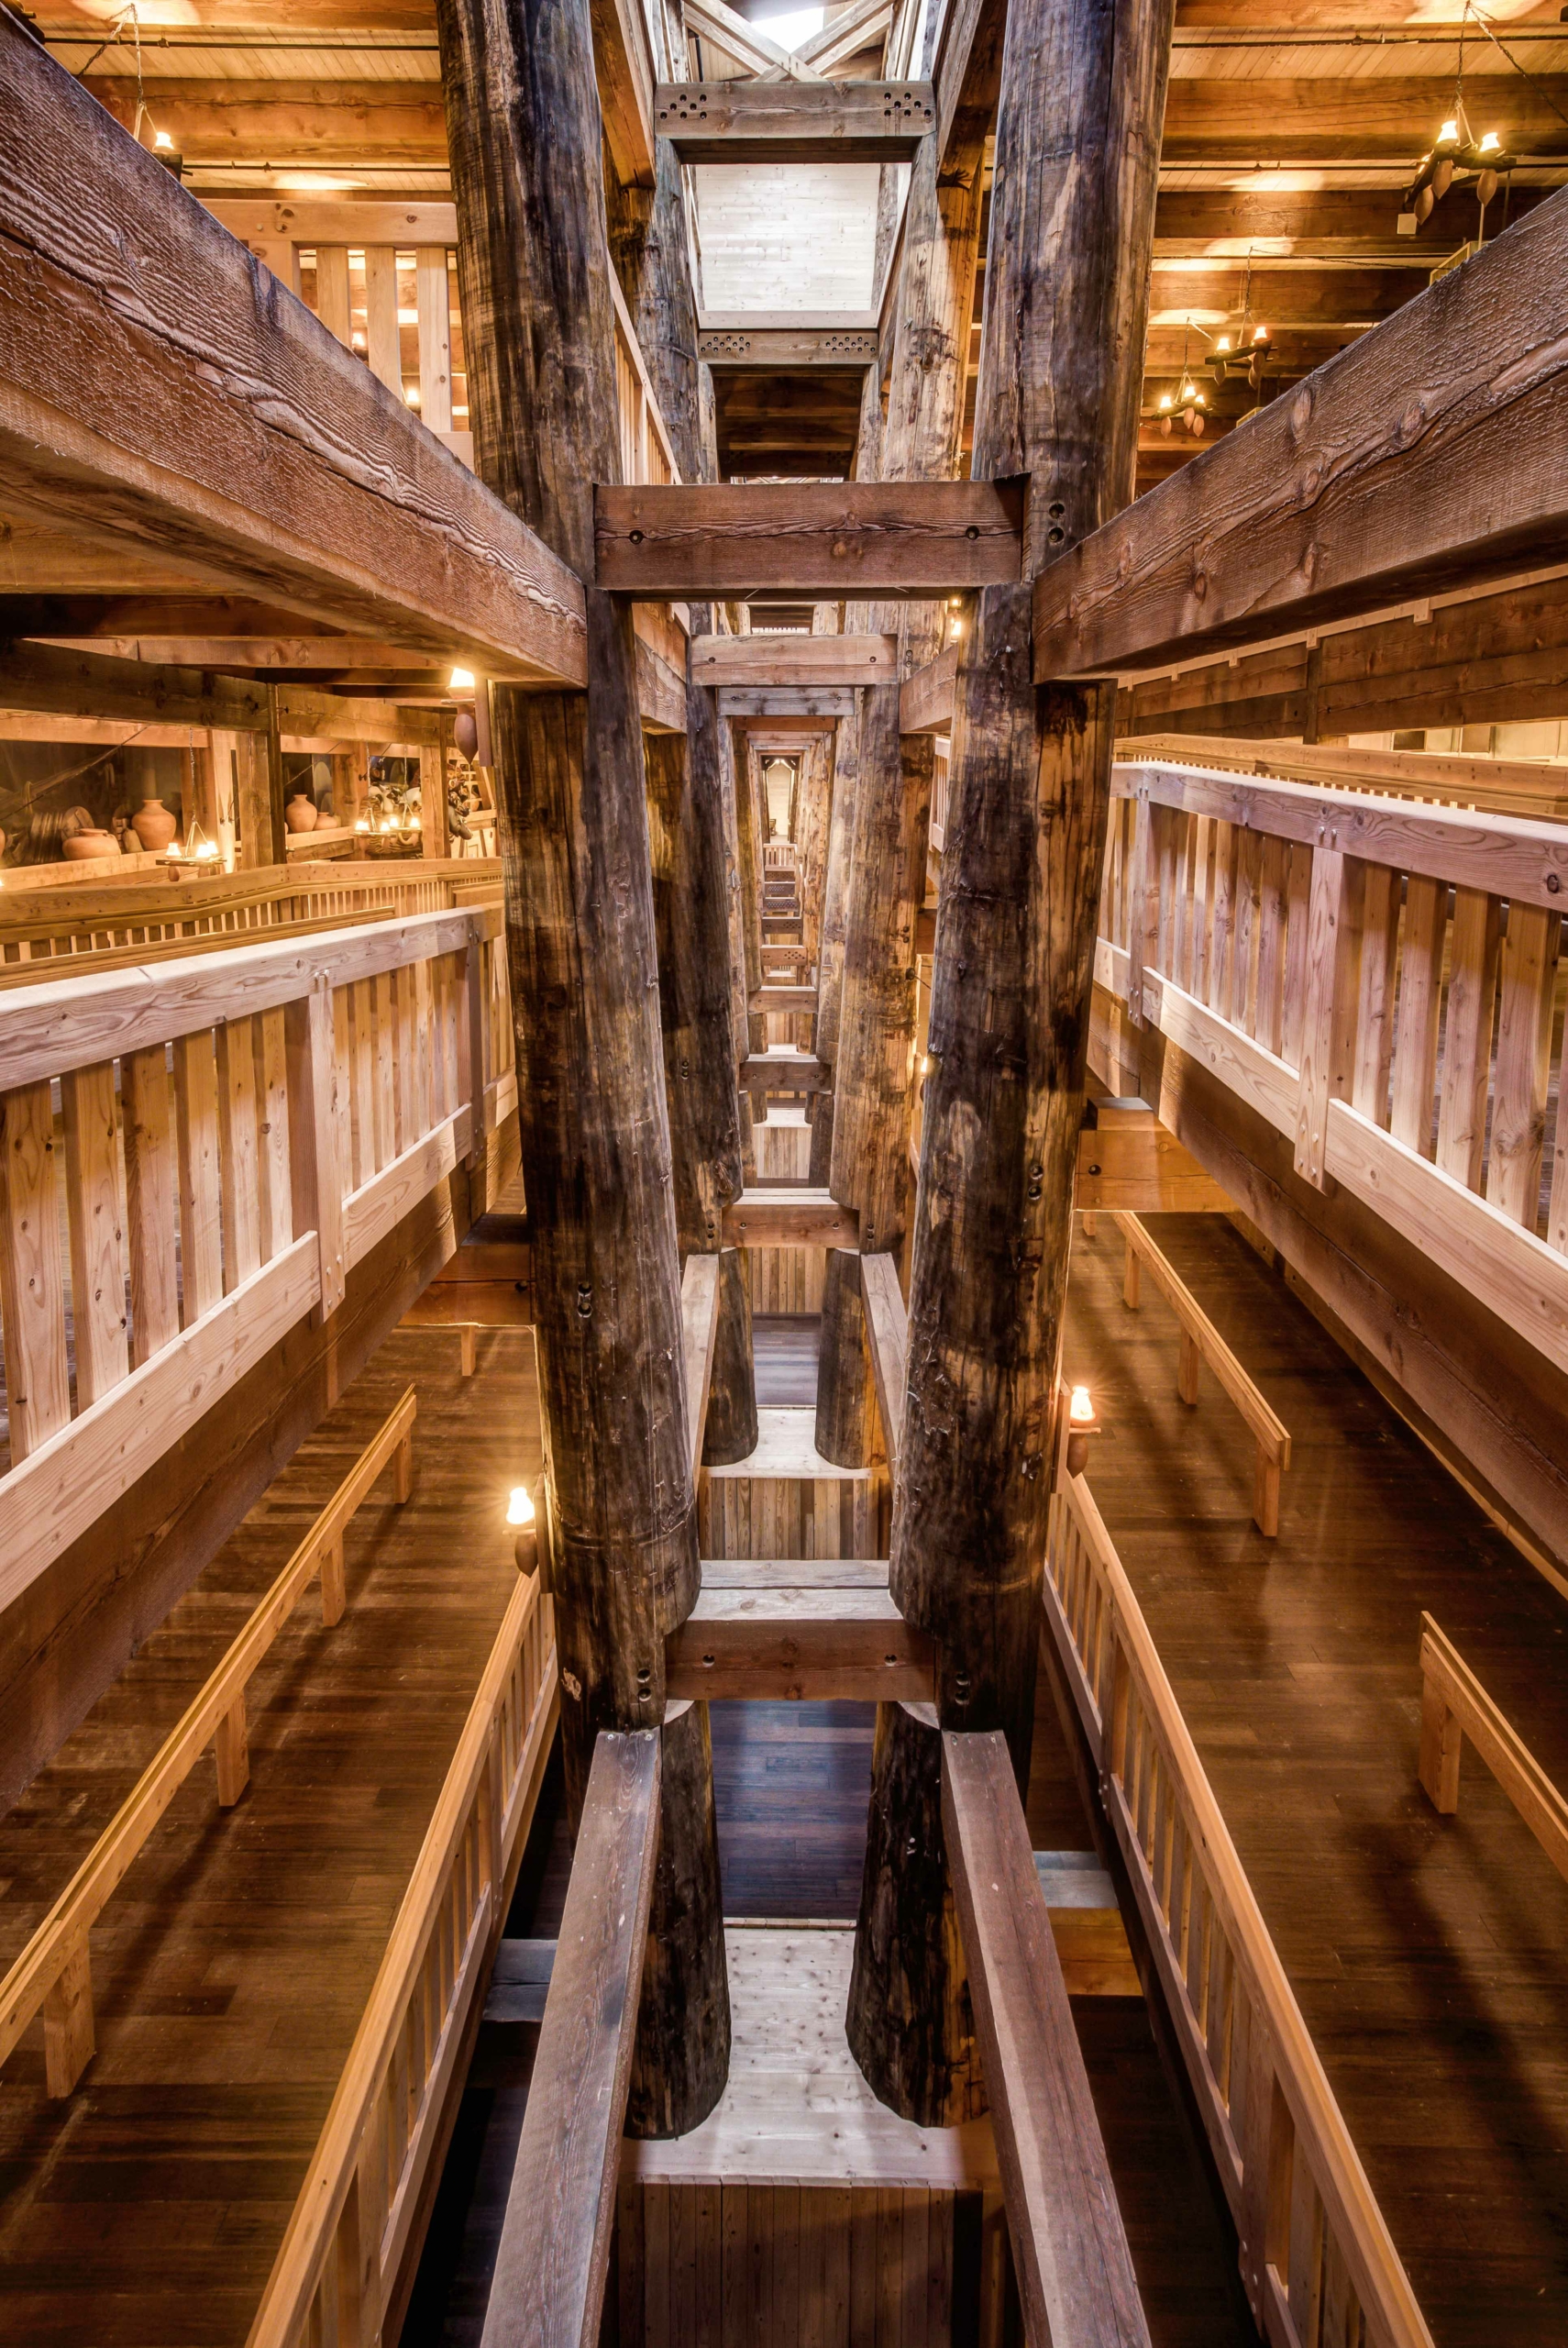 Con tàu được làm bằng gỗ và cũng là kiến trúc khung gỗ độc lập lớn nhất trên thế giới. (Ảnh: Đăng dưới sự cho phép của Answers in Genesis)